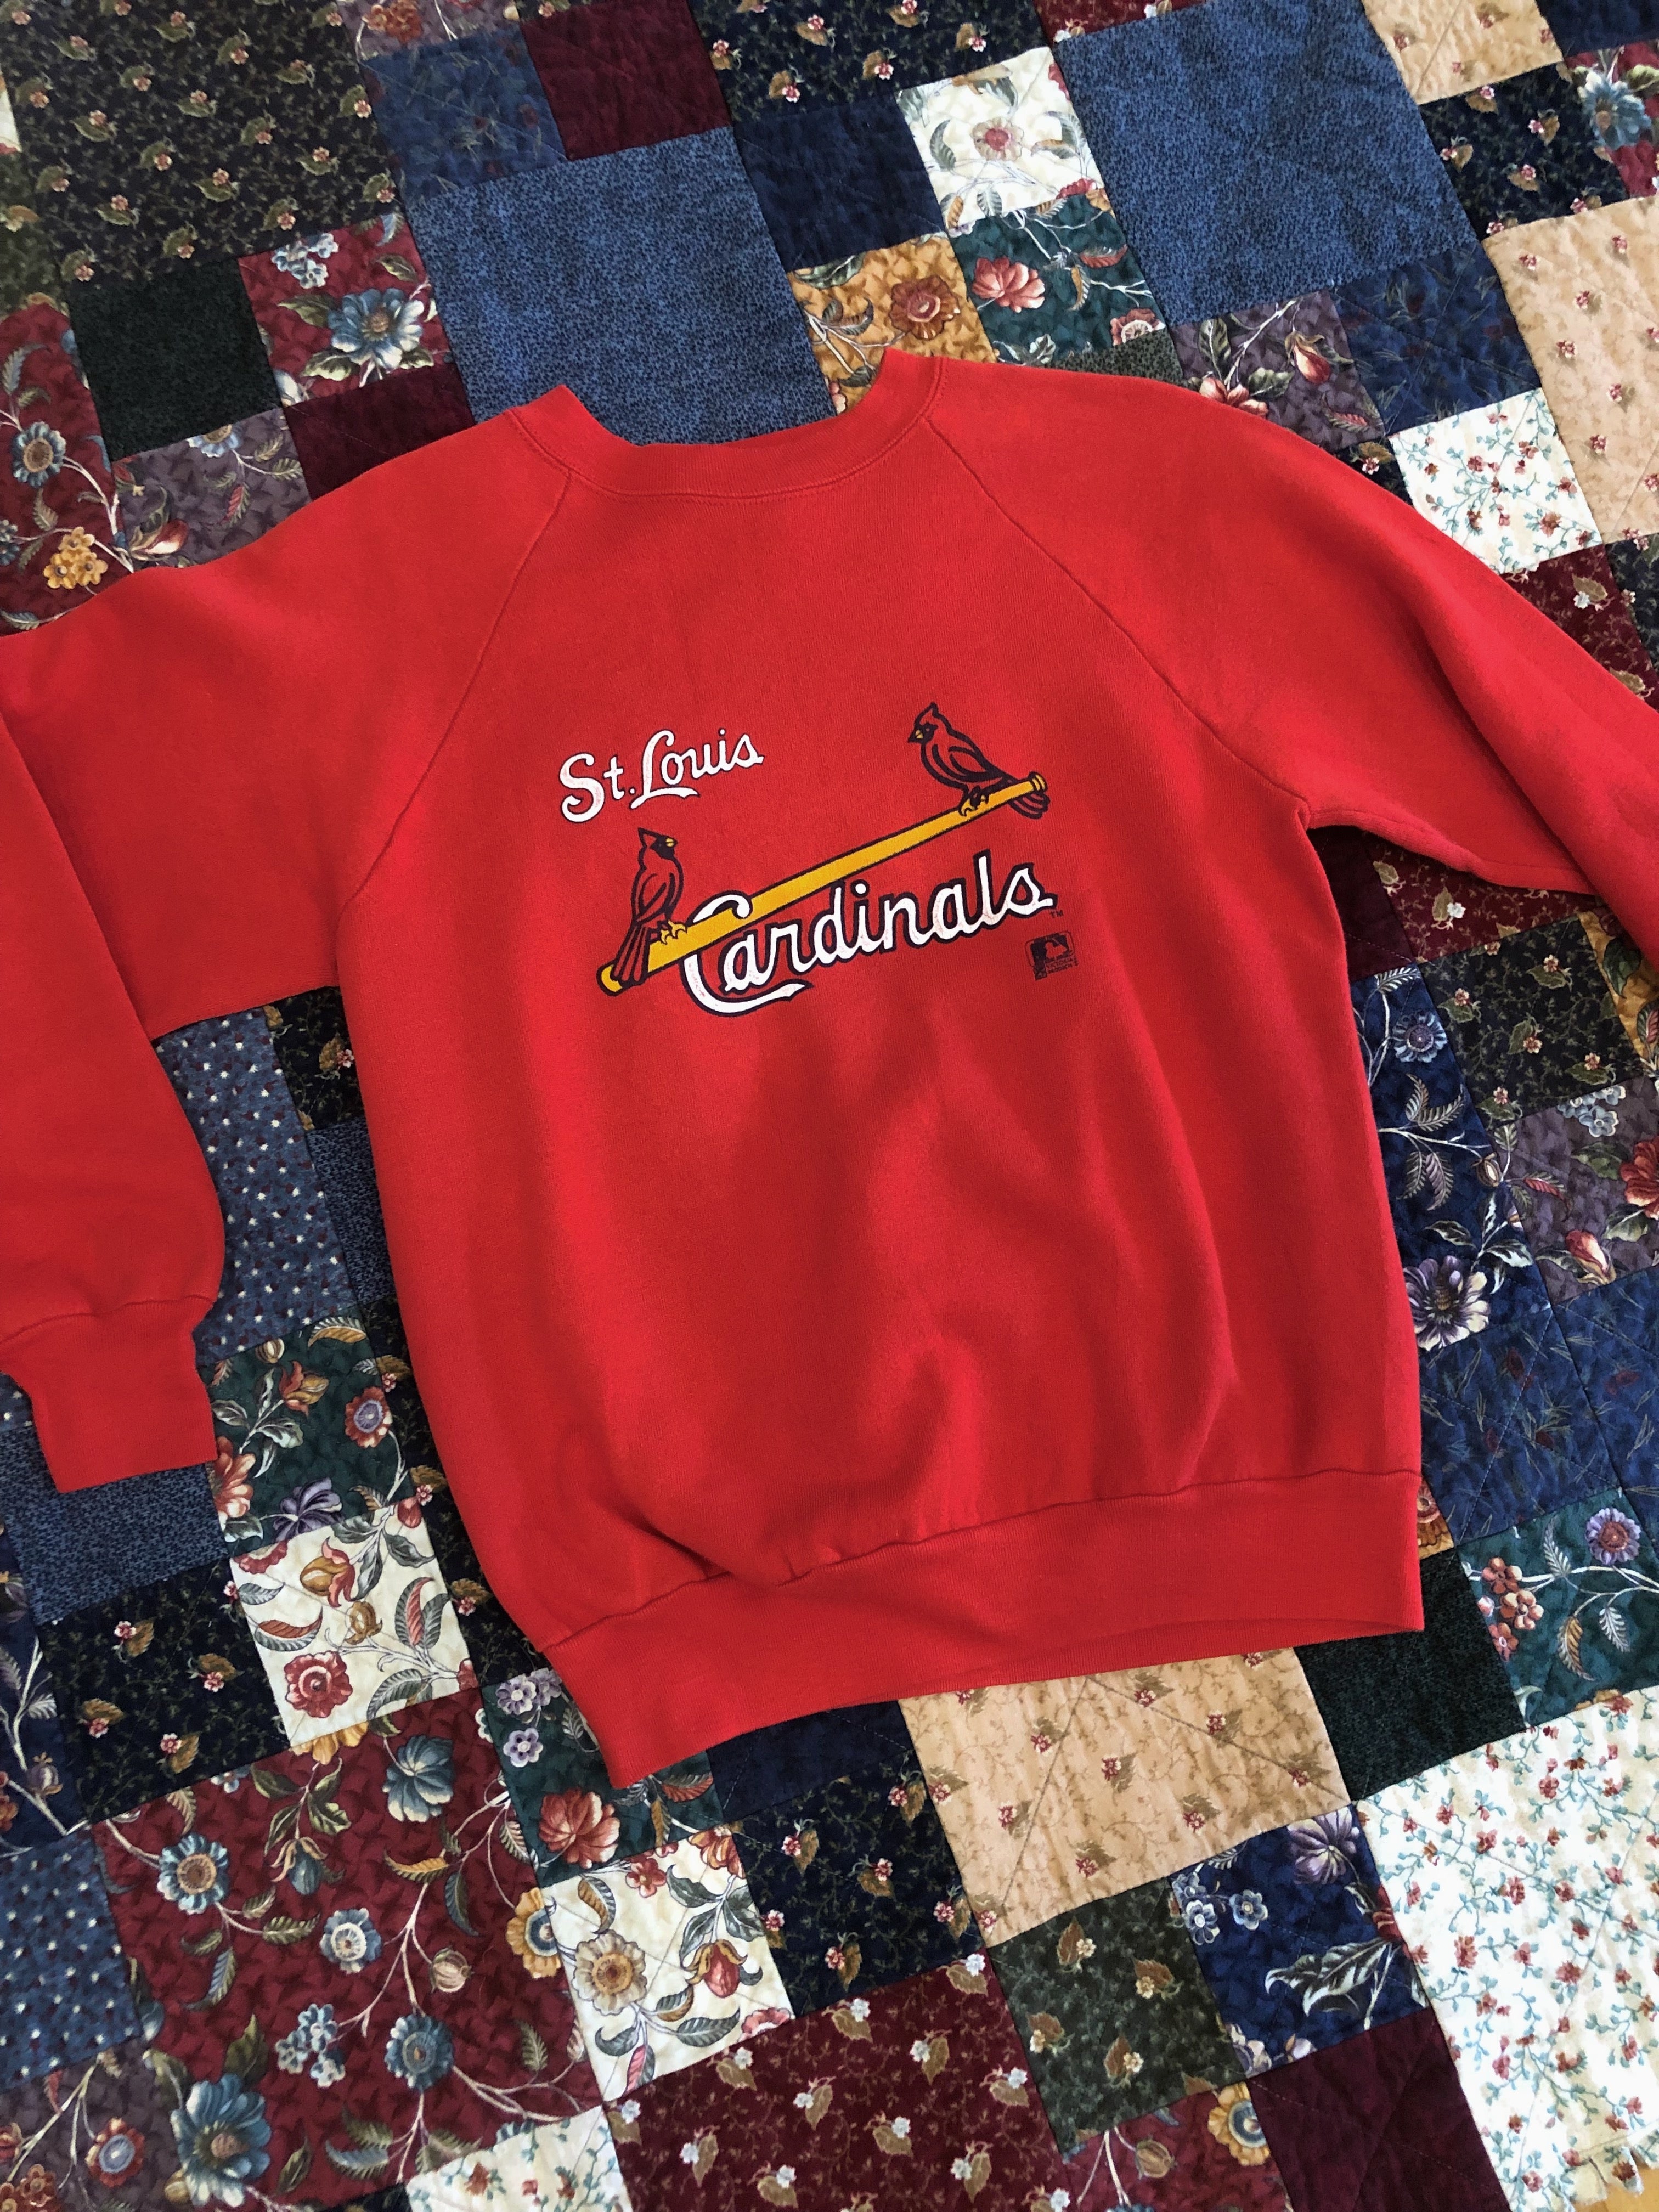 Vintage 1980s St. Louis Cardinals Sweatshirt – Electric West